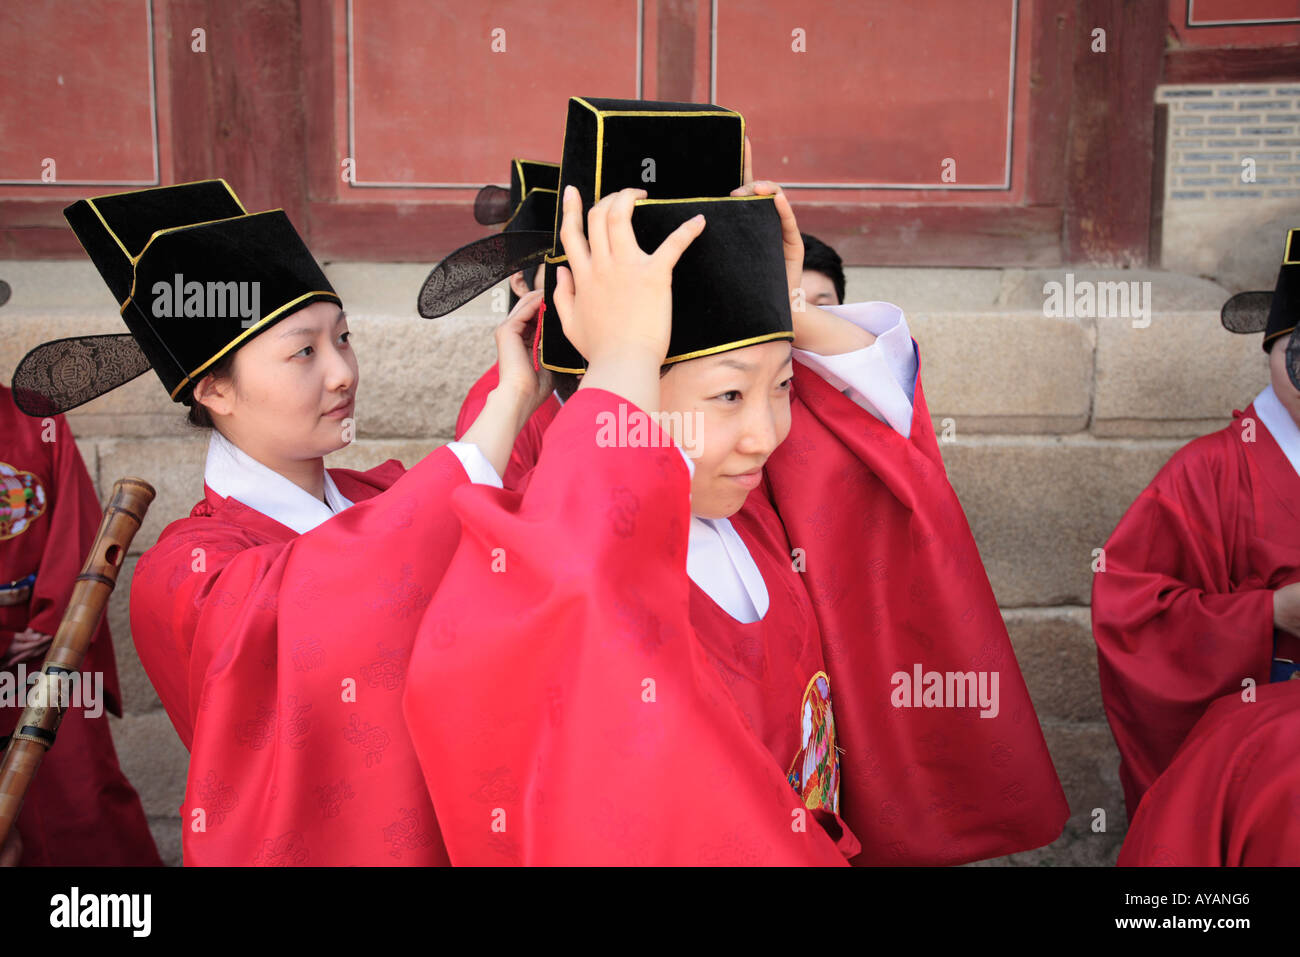 South Korea-Seoul-Schauspieler in historischen Kostümen vorbereiten re Inkraftsetzung der königliche Prozession am Changgyeonggung eine fünf Stockfoto